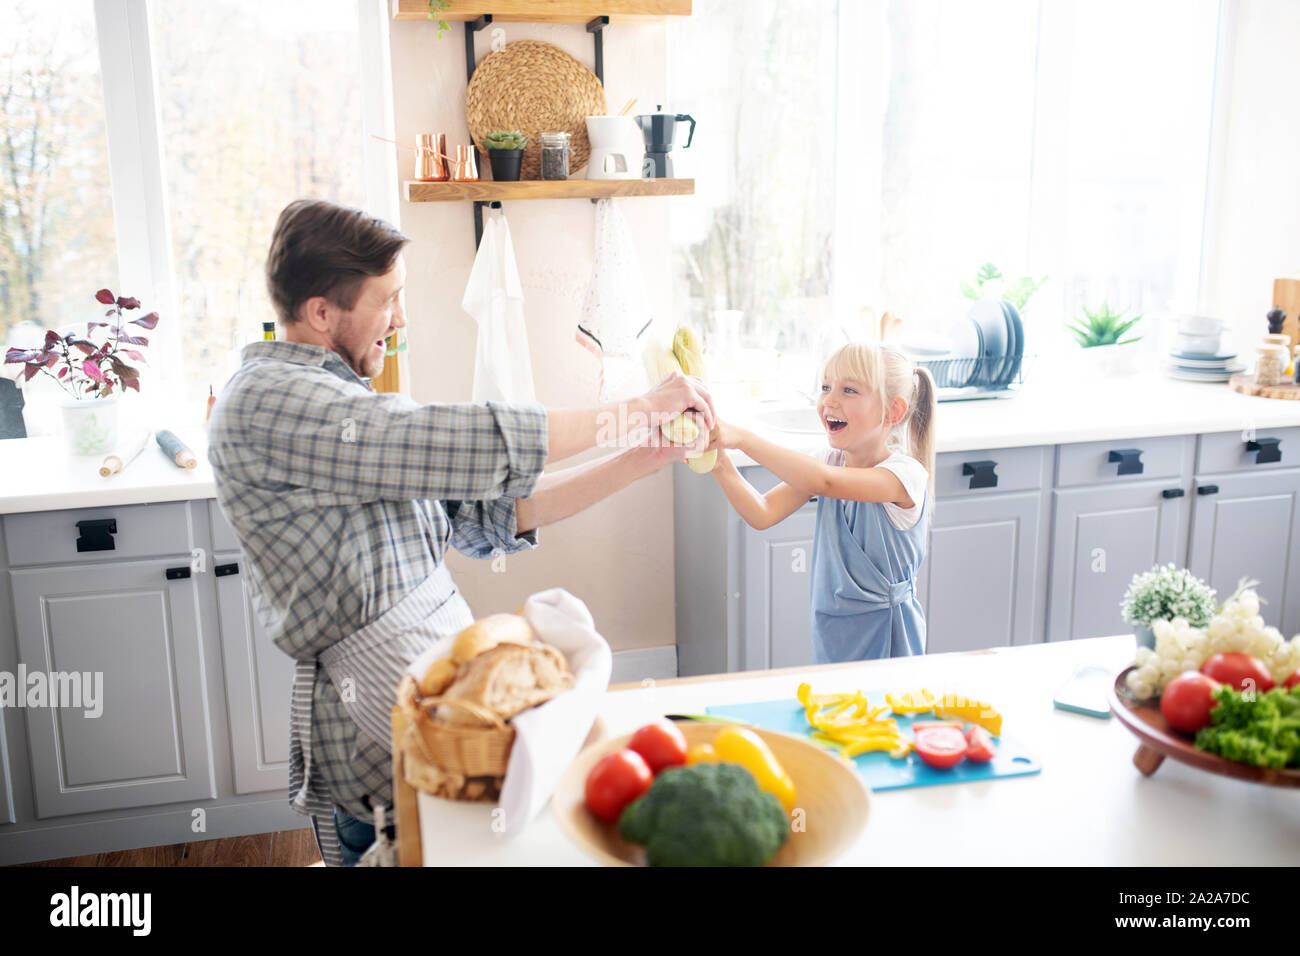 Lachend Tochter Spaß mit Vater in der Küche Stockfoto